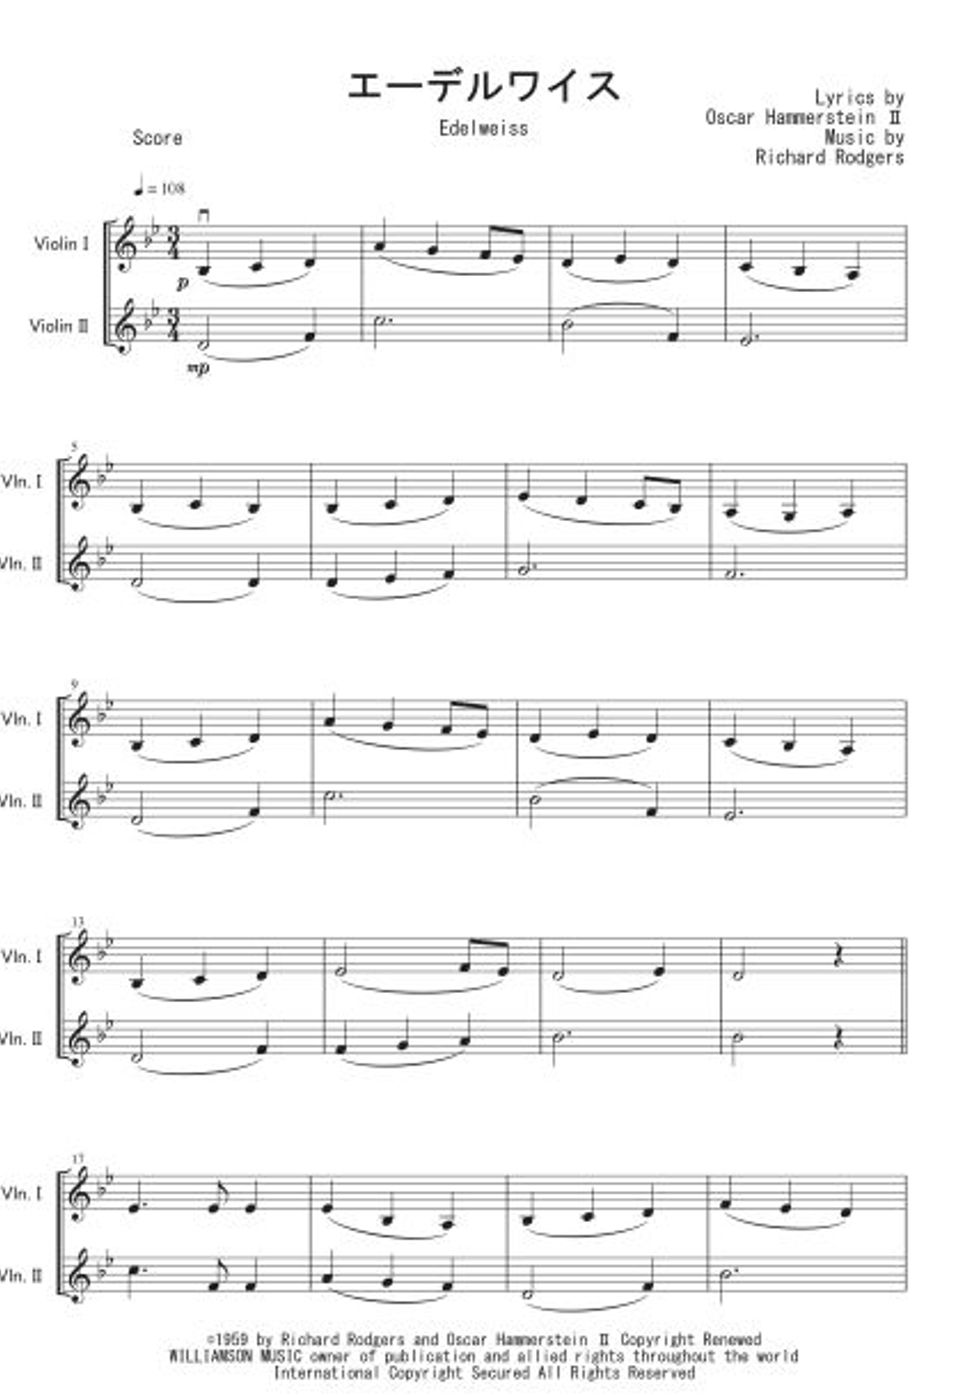 映画「サウンド・オブ・ミュージック」 - エーデルワイス (ヴァイオリン二重奏) 楽譜 by Peony